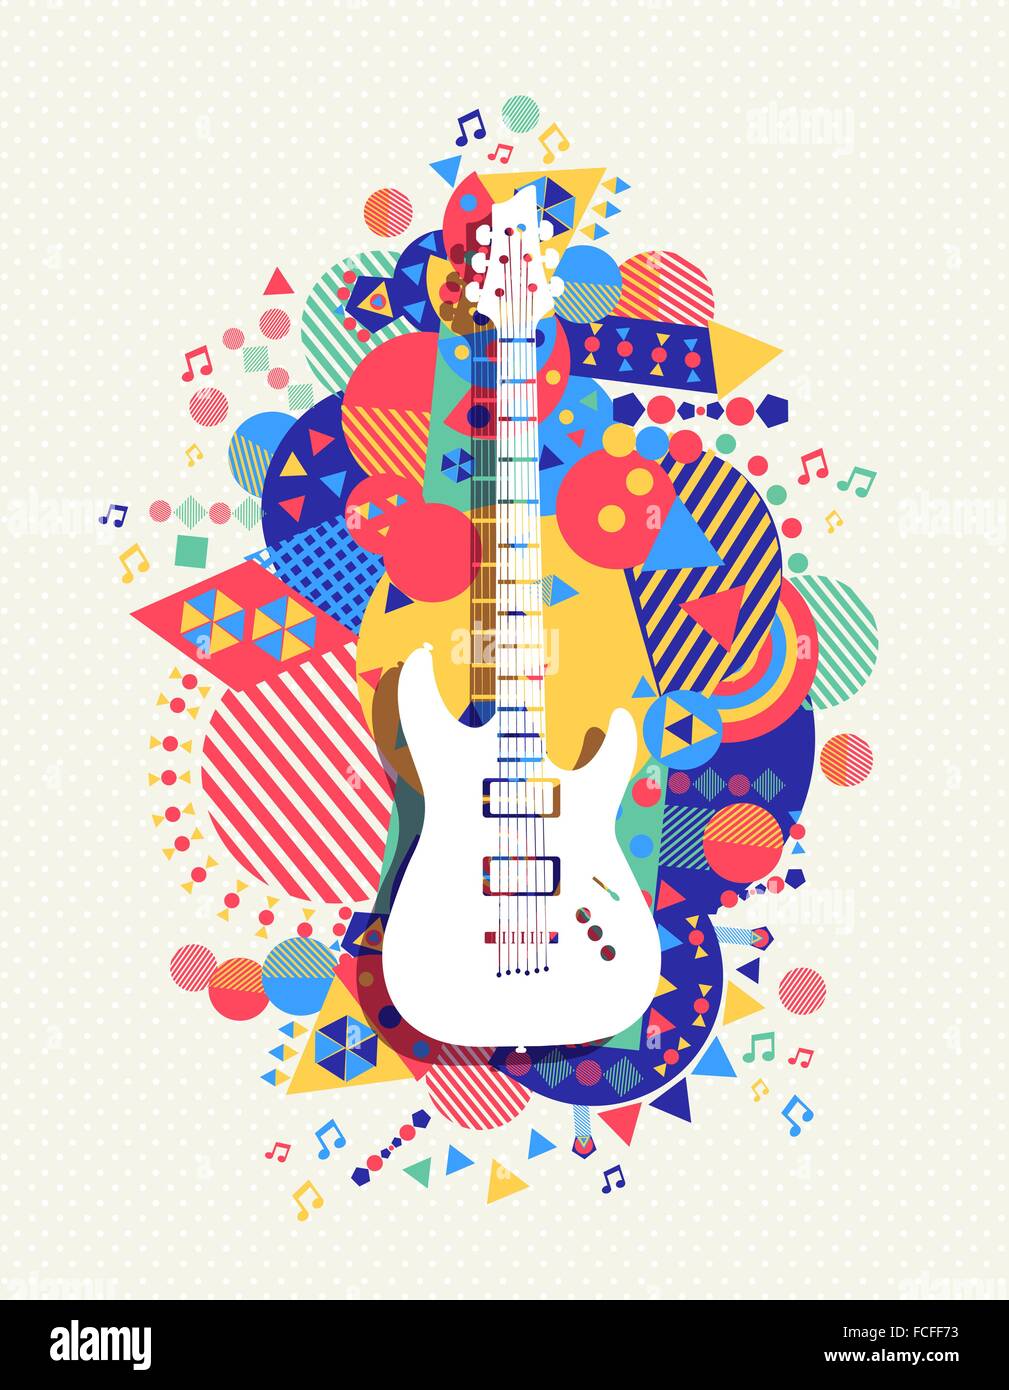 L'icône de la guitare électrique, la musique concept design avec des formes de géométrie dynamique arrière-plan. Vecteur EPS10. Illustration de Vecteur